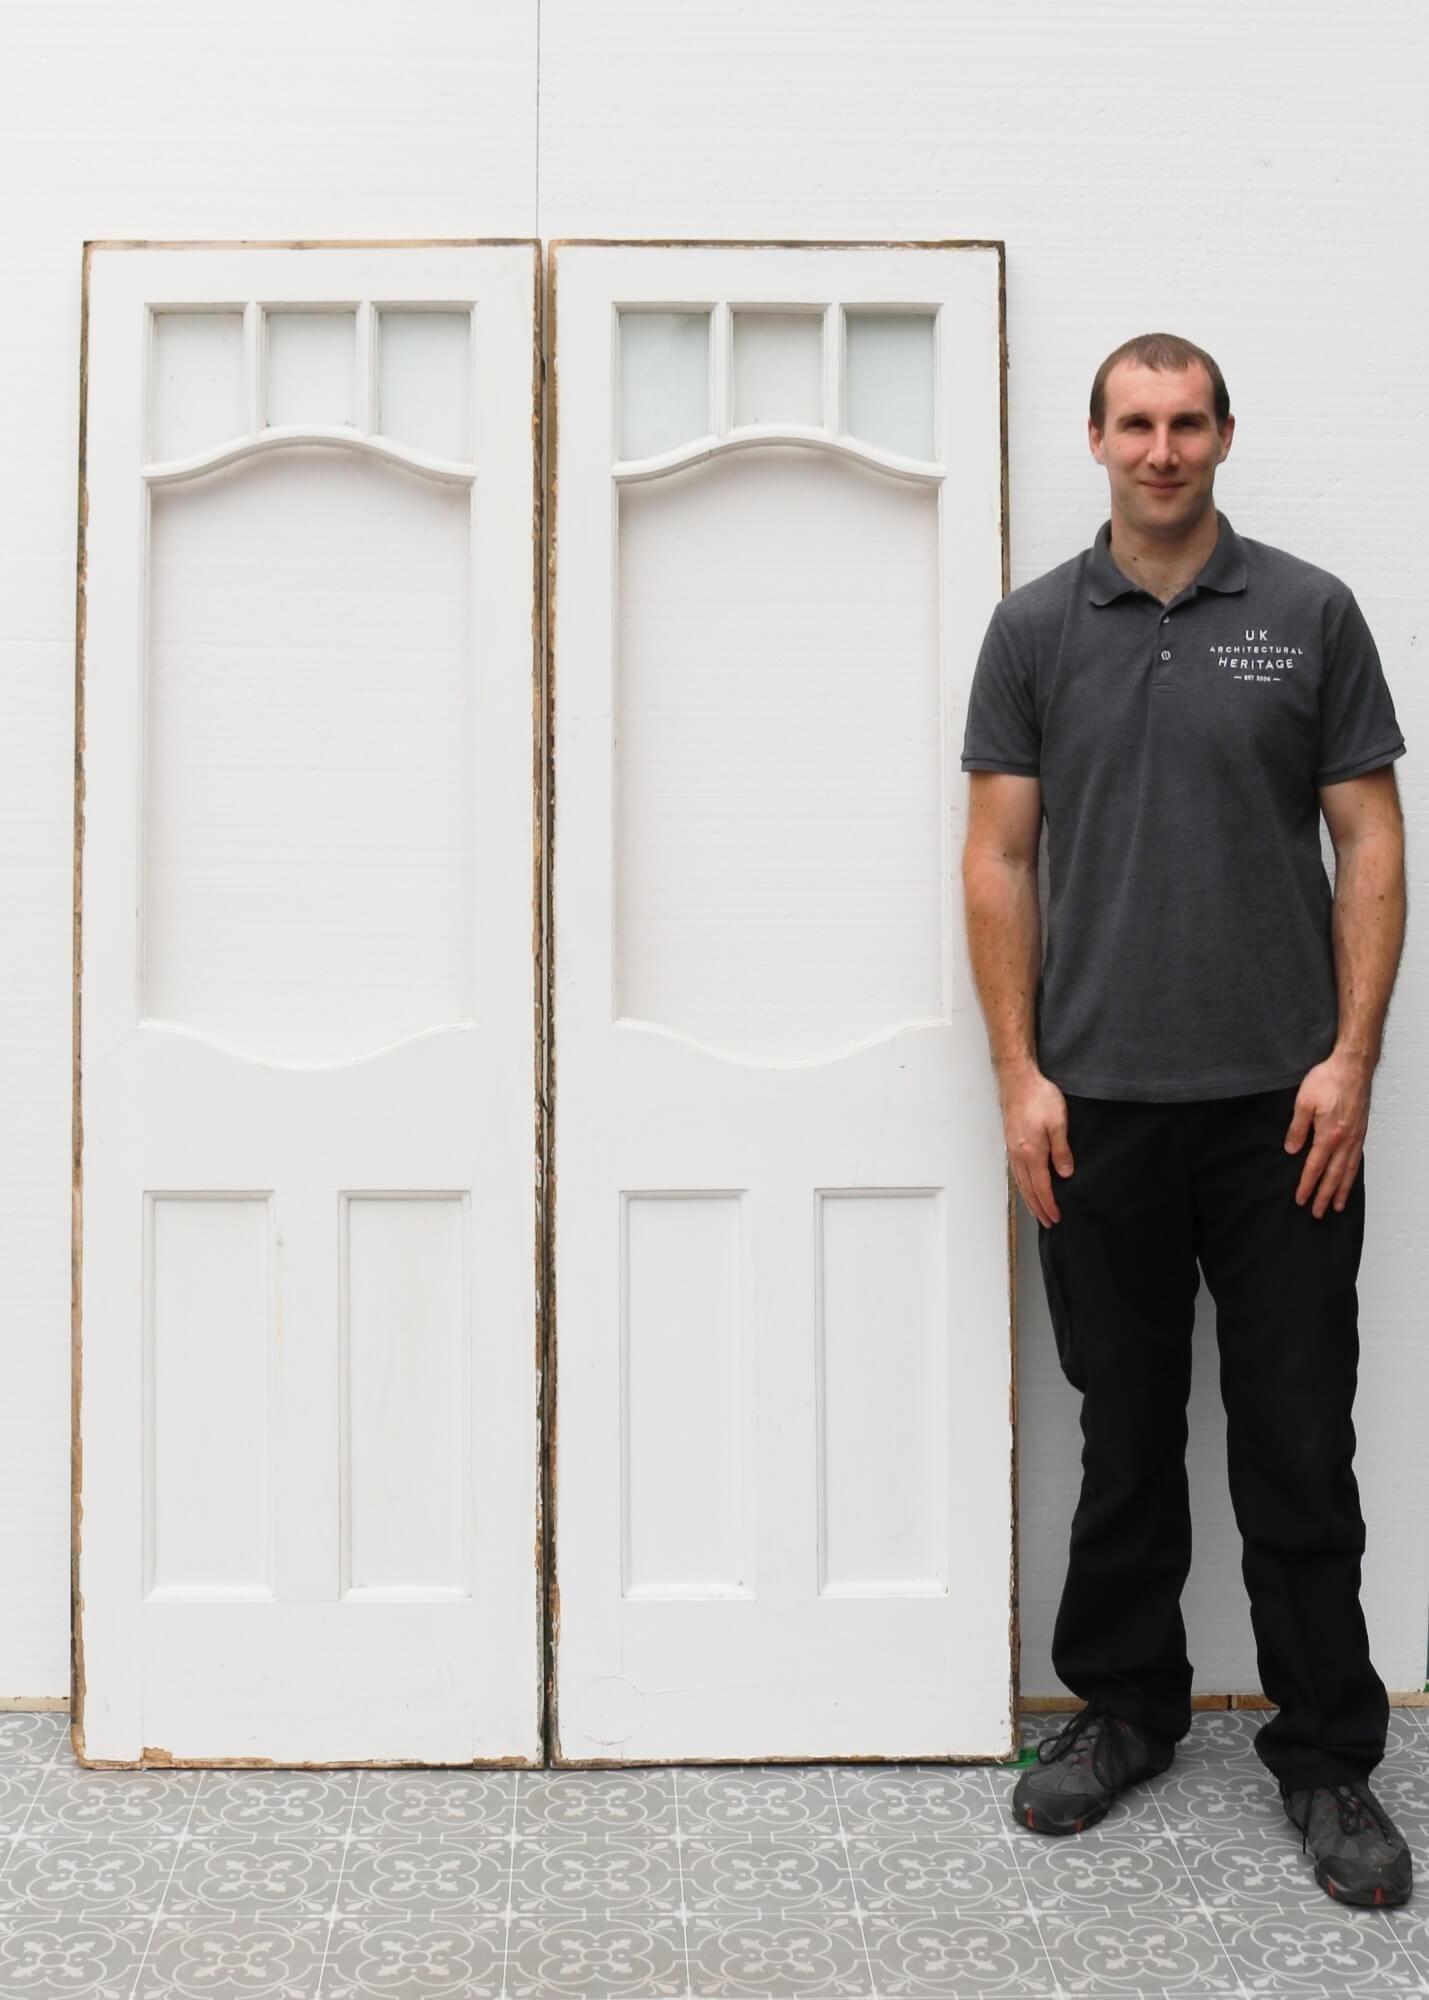 Wenn die Paneele auf beiden Seiten einer Doppeltür angebracht sind, ergibt dieses Paar eine schöne Kombination aus Innen- und Außentüren, insbesondere in Häusern aus der edwardianischen und viktorianischen Ära. Die oberen drei Scheiben jeder Tür